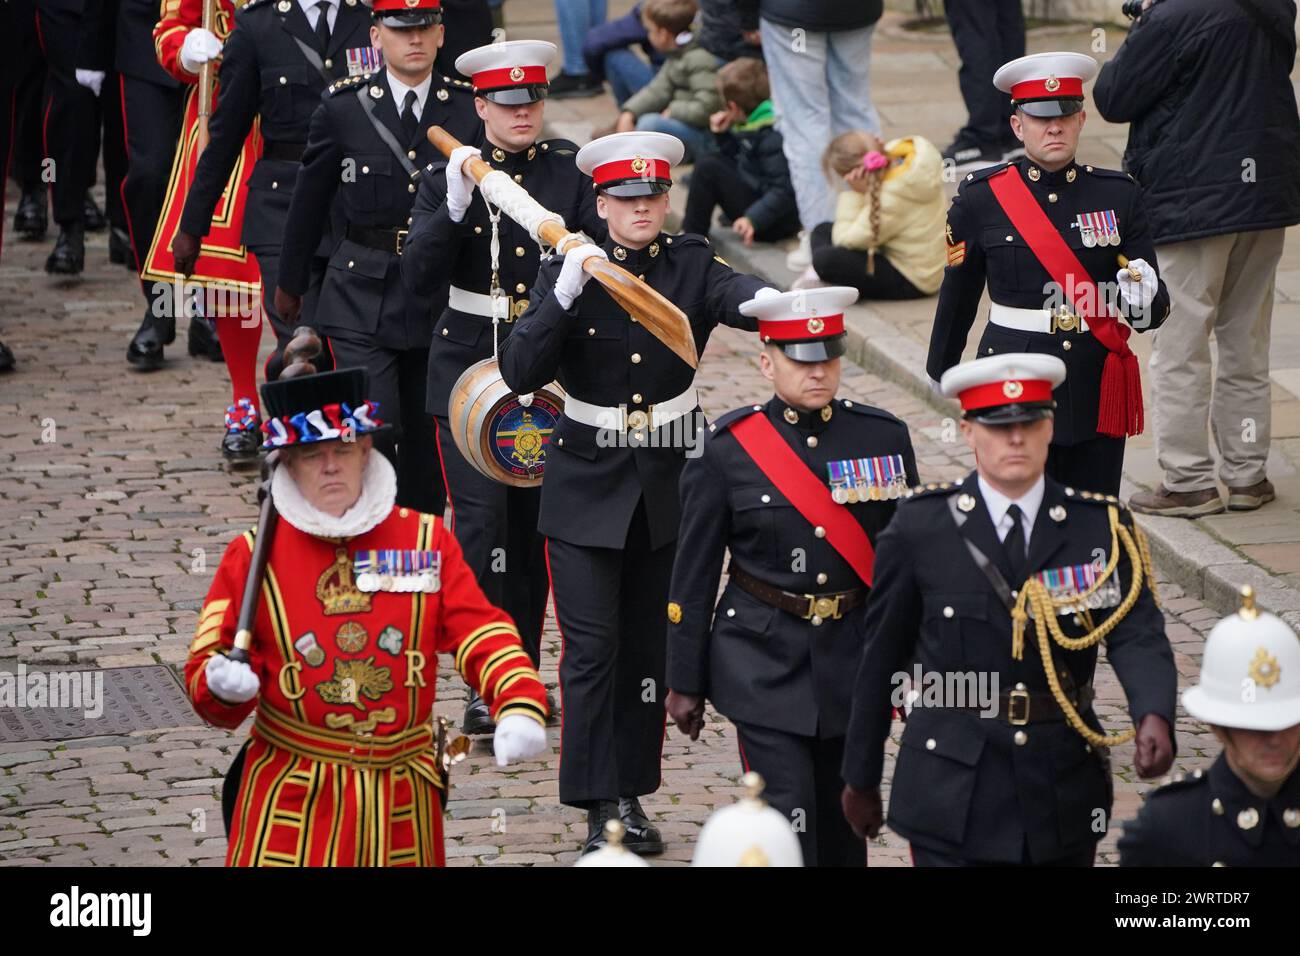 Die Royal Marines tragen während der alten Zeremonie der Constable's Duty ein Hafenfass, wenn dem Constable ein Hafenfass im Tower of London überreicht wird. Die diesjährige Zeremonie wird von den Royal Marines zu ihrem 360. Jahrestag durchgeführt. Bilddatum: Donnerstag, 14. März 2024. Stockfoto